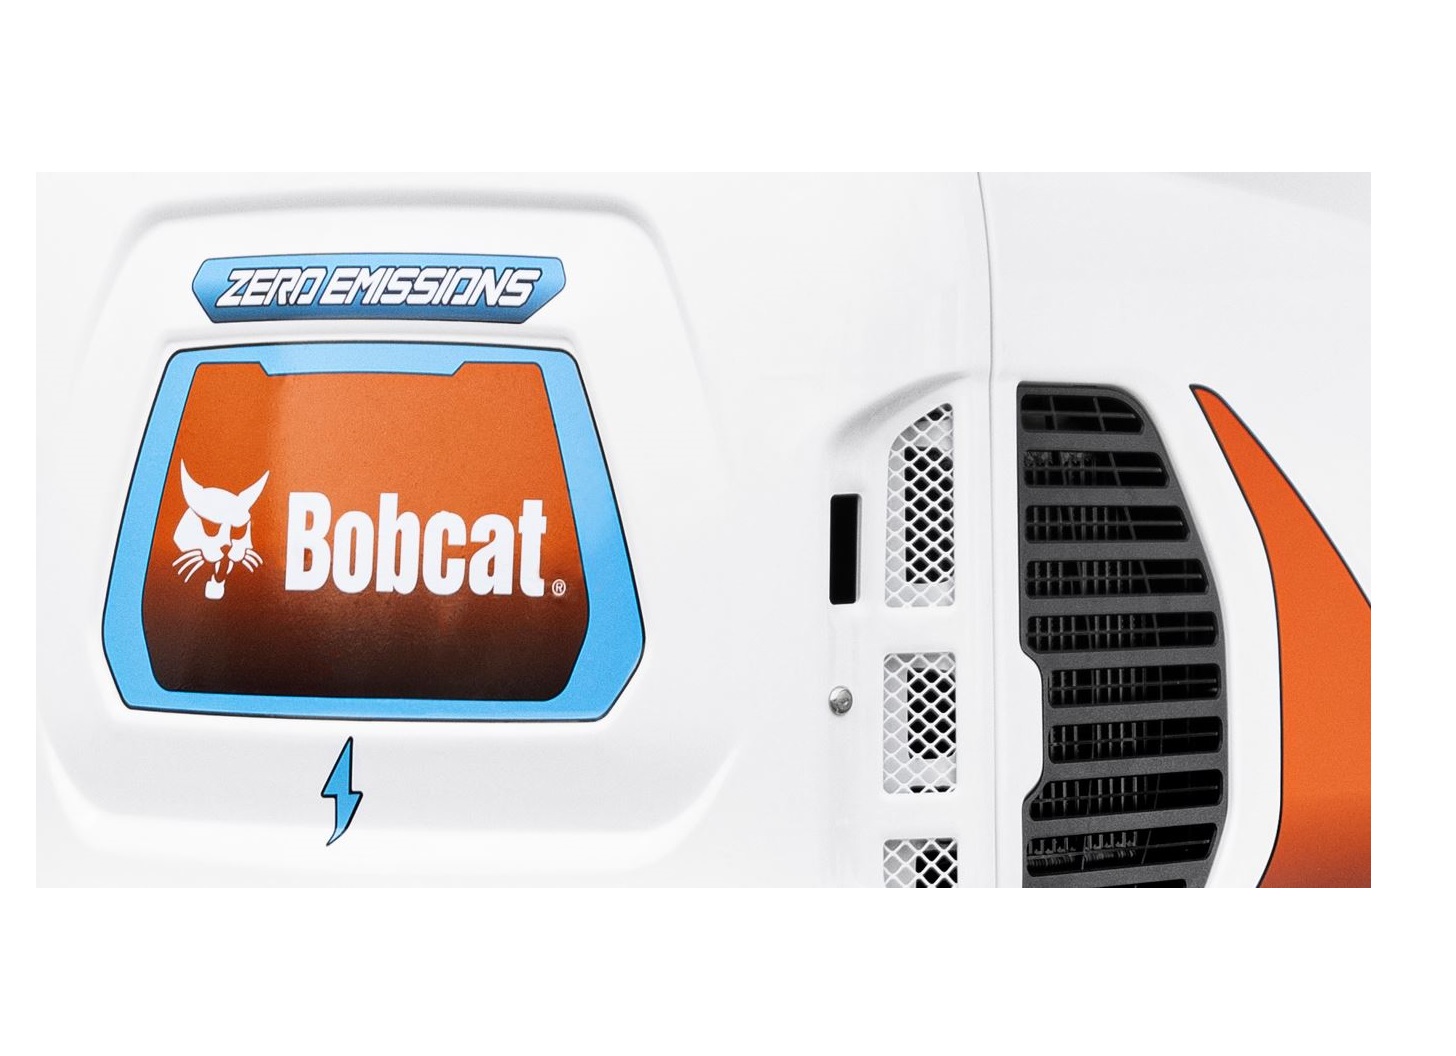 Bobcat Groundbreaking innovations